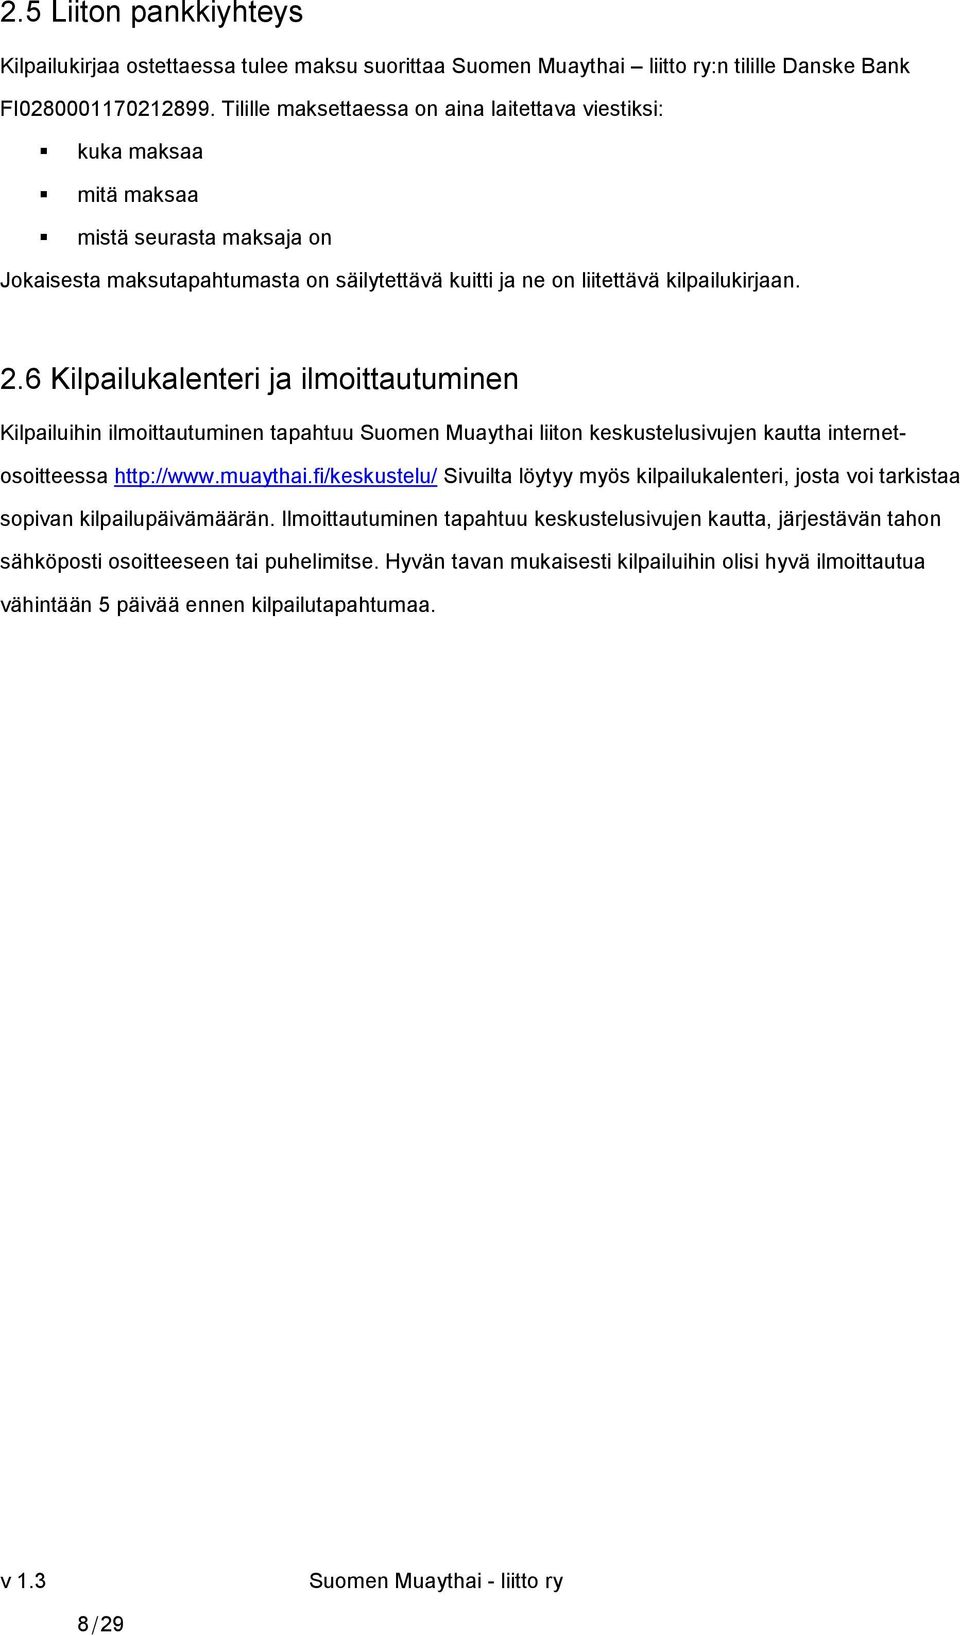 6 Kilpailukalenteri ja ilmoittautuminen Kilpailuihin ilmoittautuminen tapahtuu Suomen Muaythai liiton keskustelusivujen kautta internetosoitteessa http://www.muaythai.